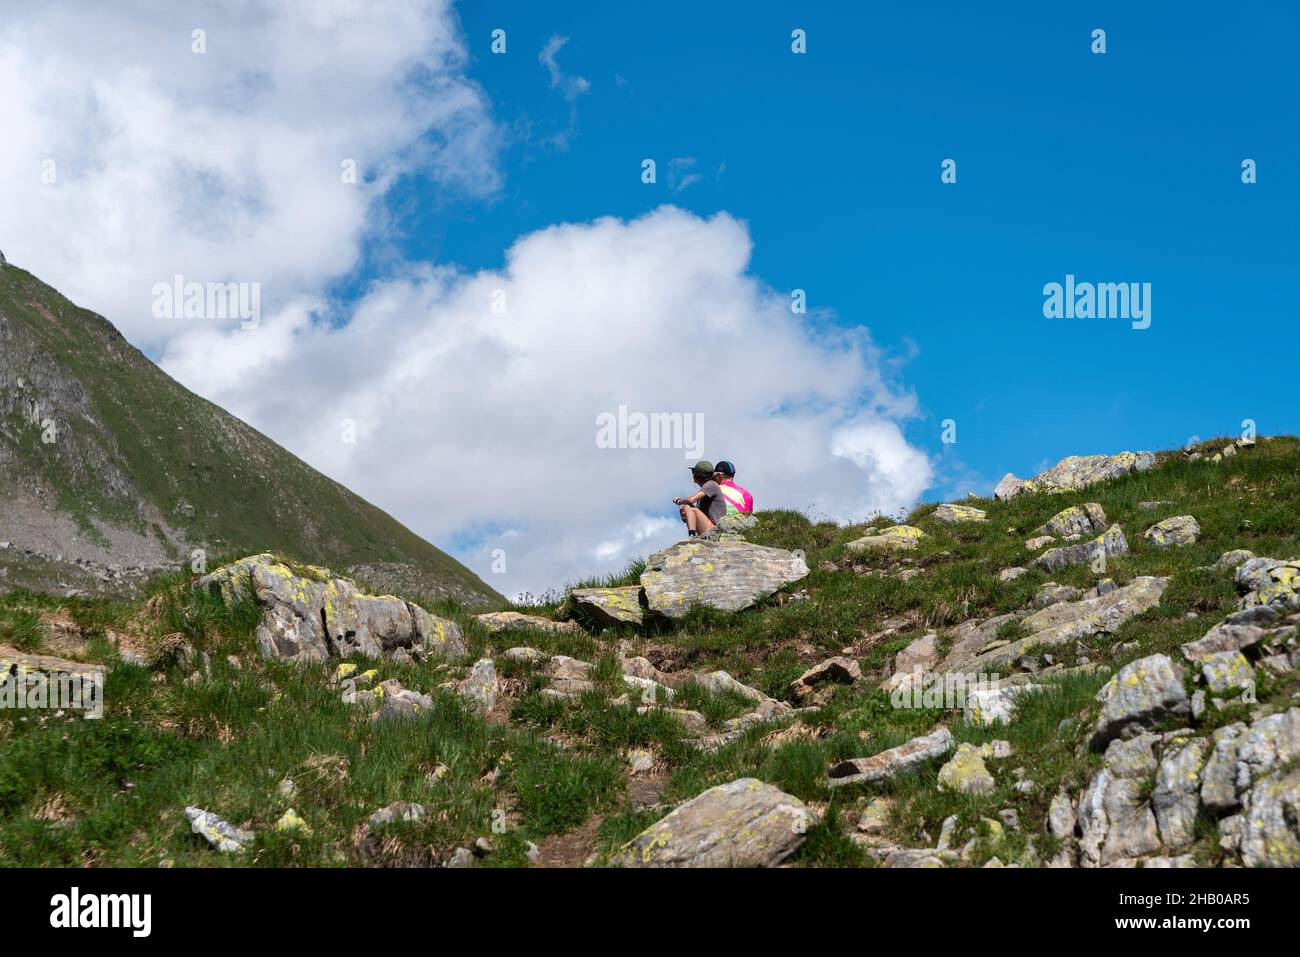 Hikers rest in alpine landscape by the Nufenen Pass, Ulrichen, Valais, Switzerland, Europe Stock Photo